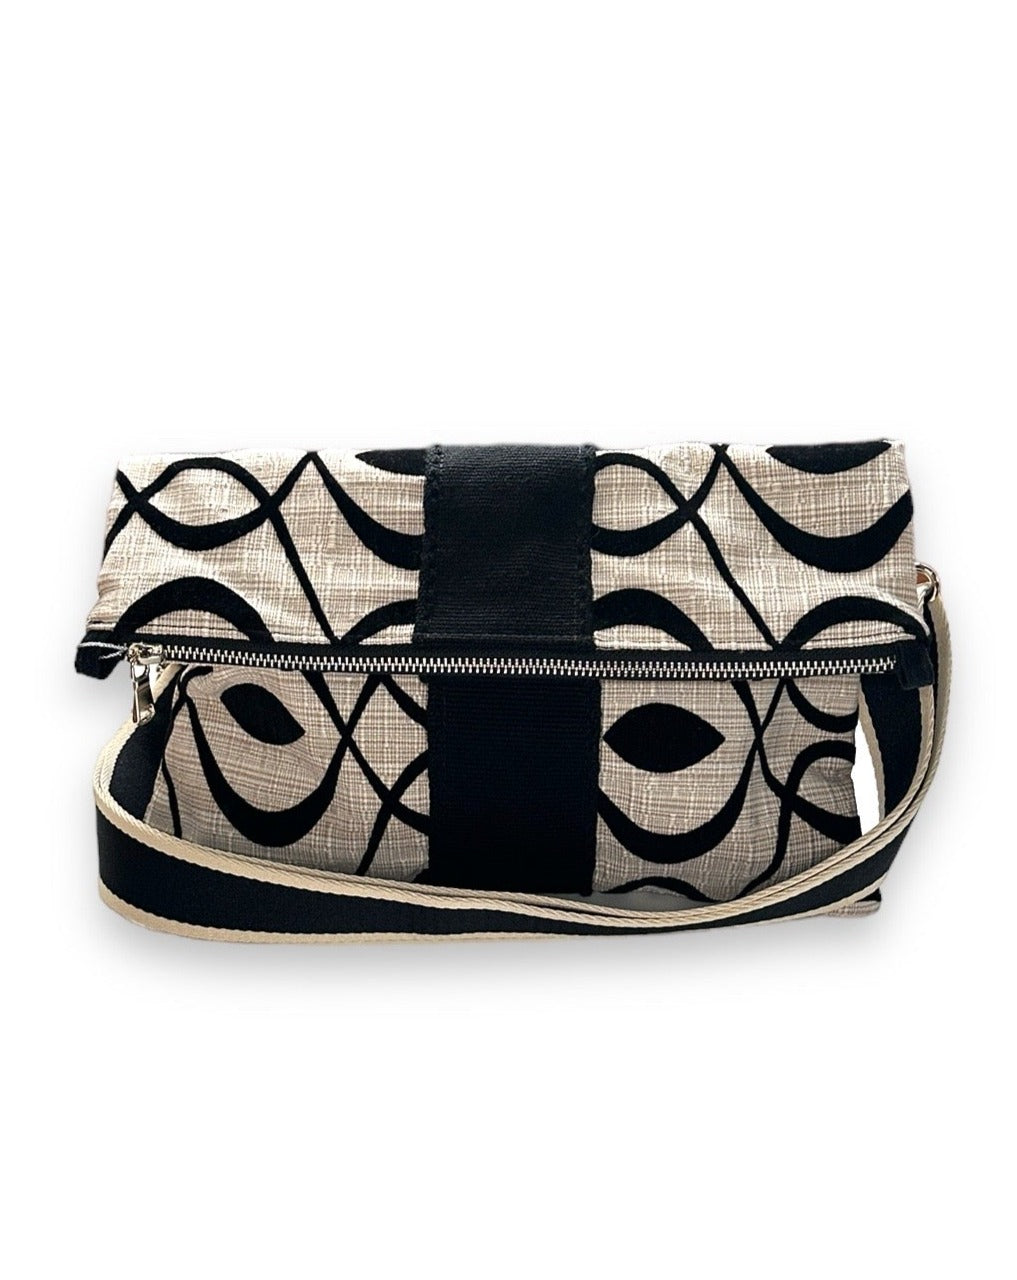 Cream and black Felted Swirl foldover crossbody bag with Wayuu Trim.